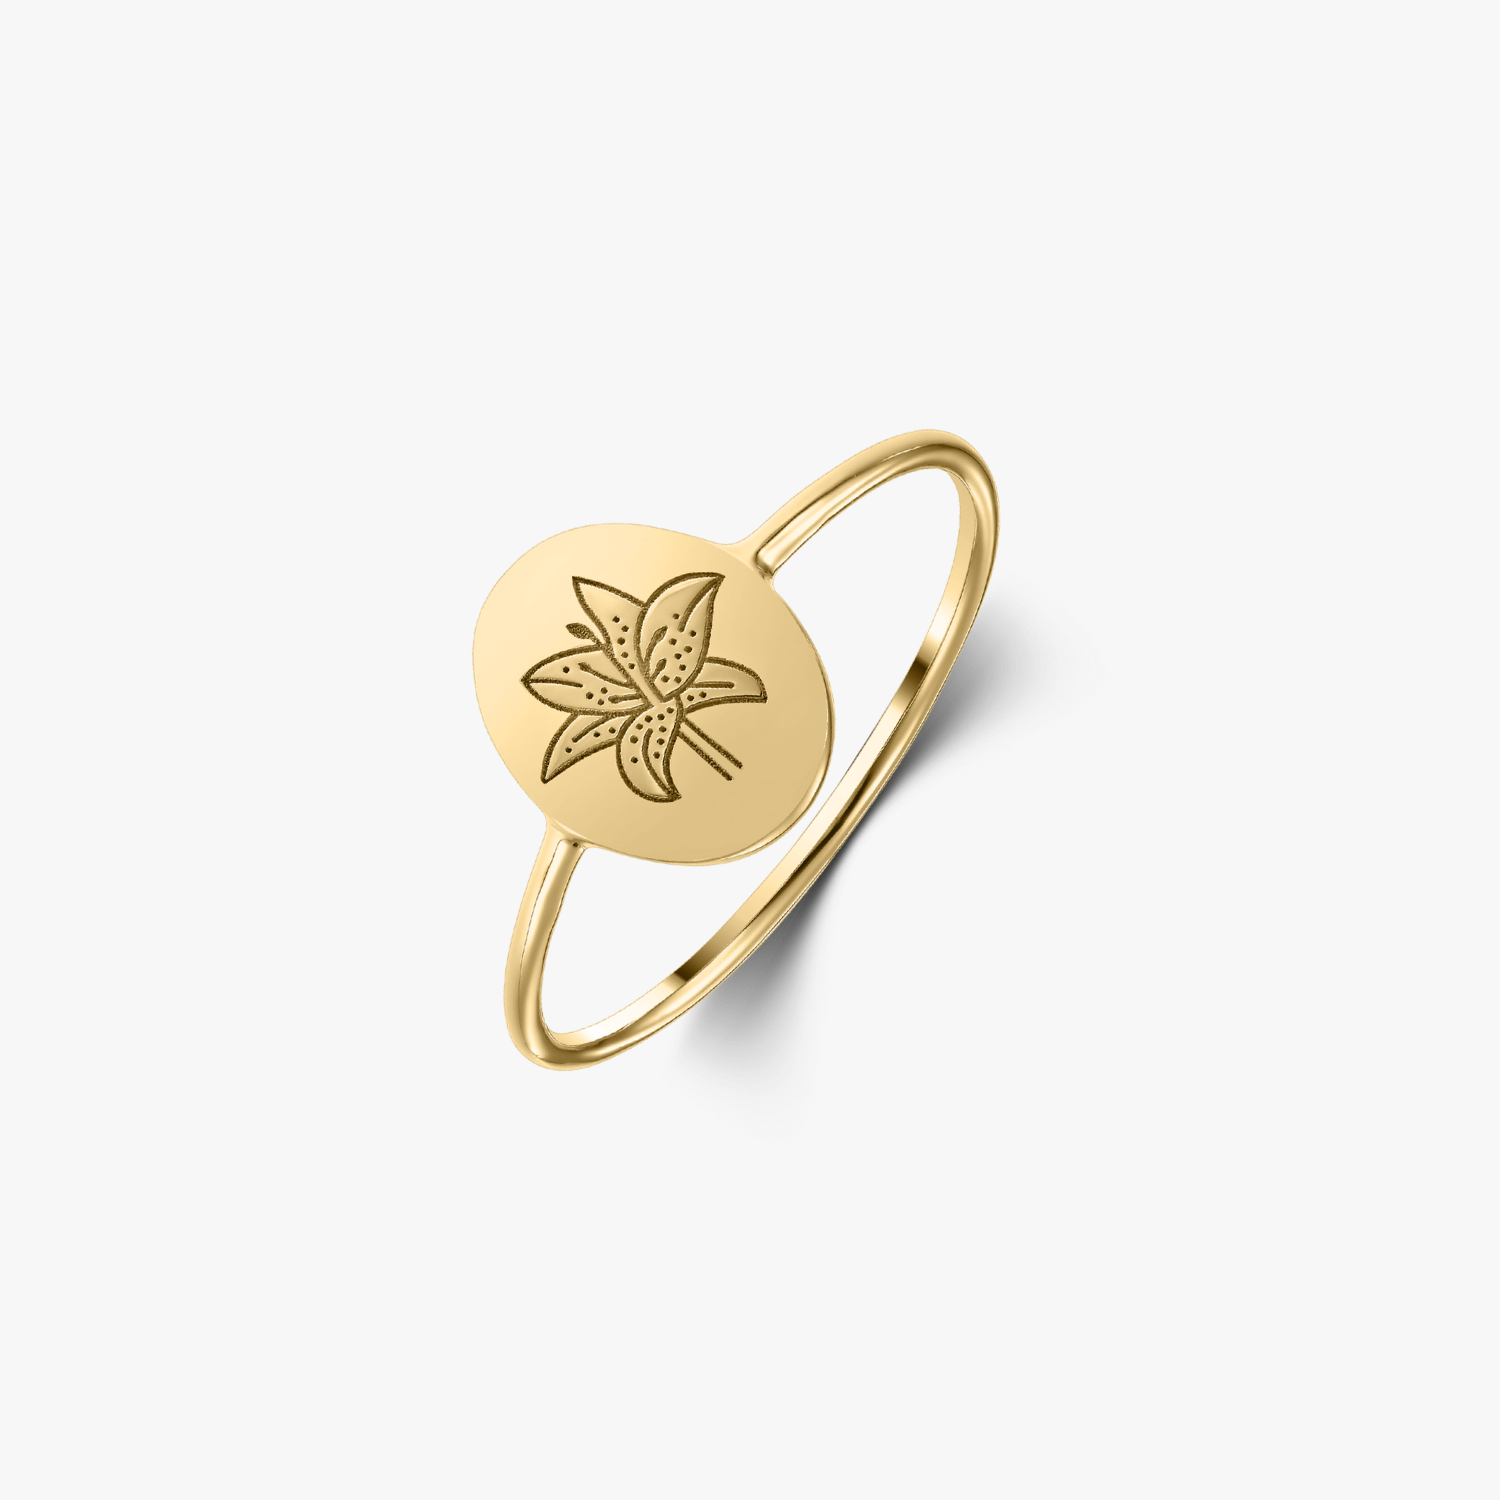 Birthflower gold ring